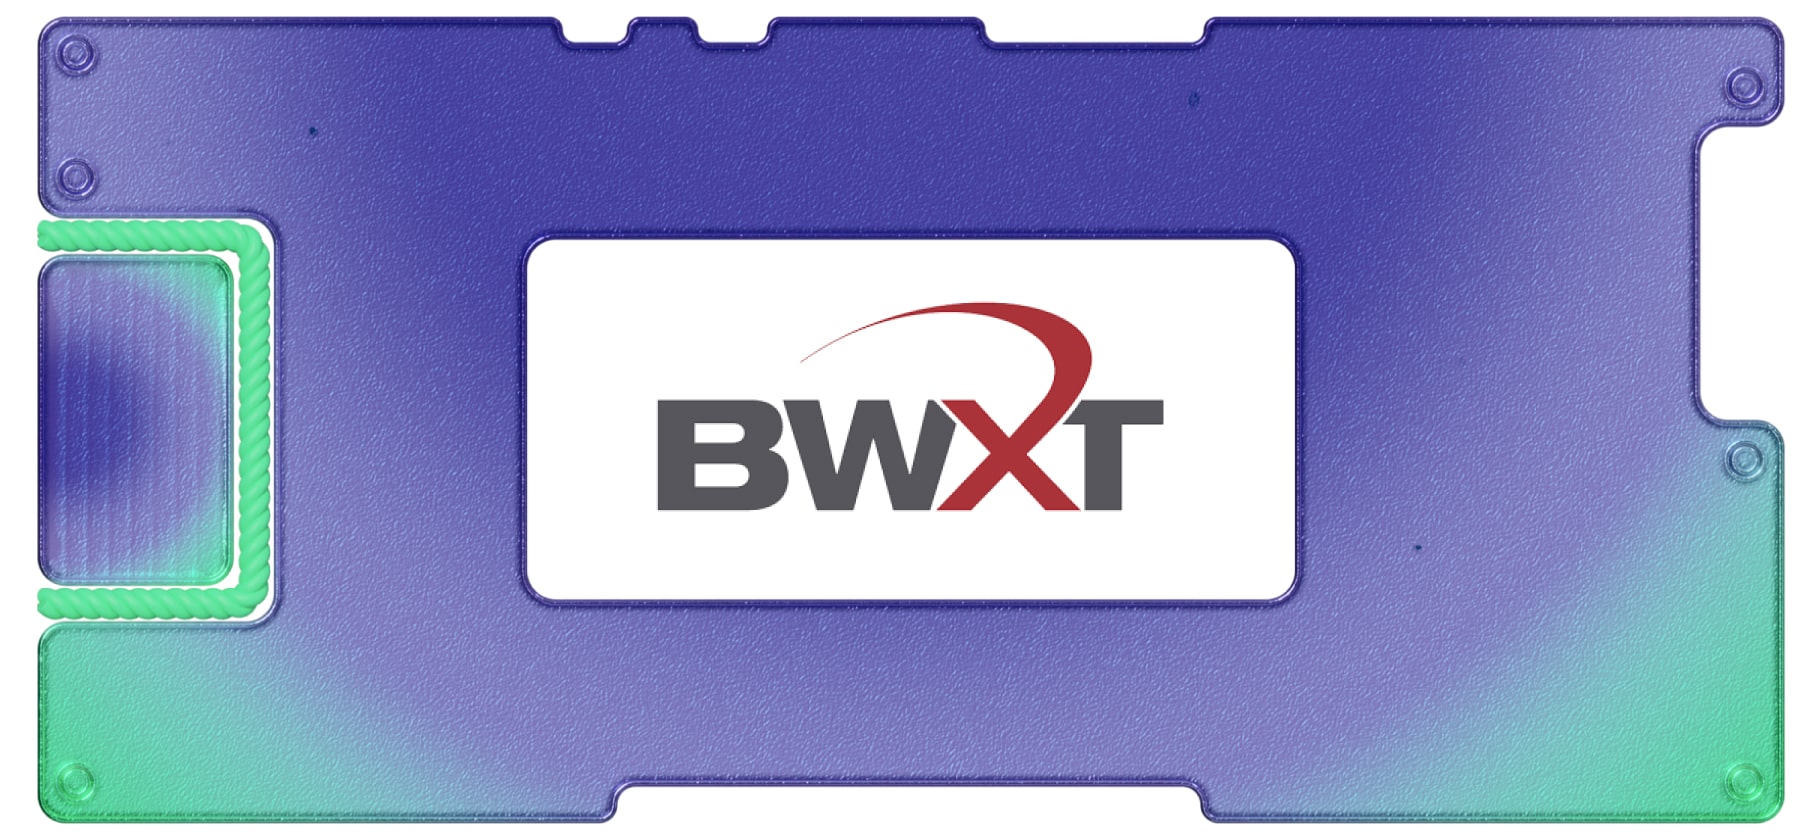 Инвестидея: BWX Technologies, потому что пока атом мирный